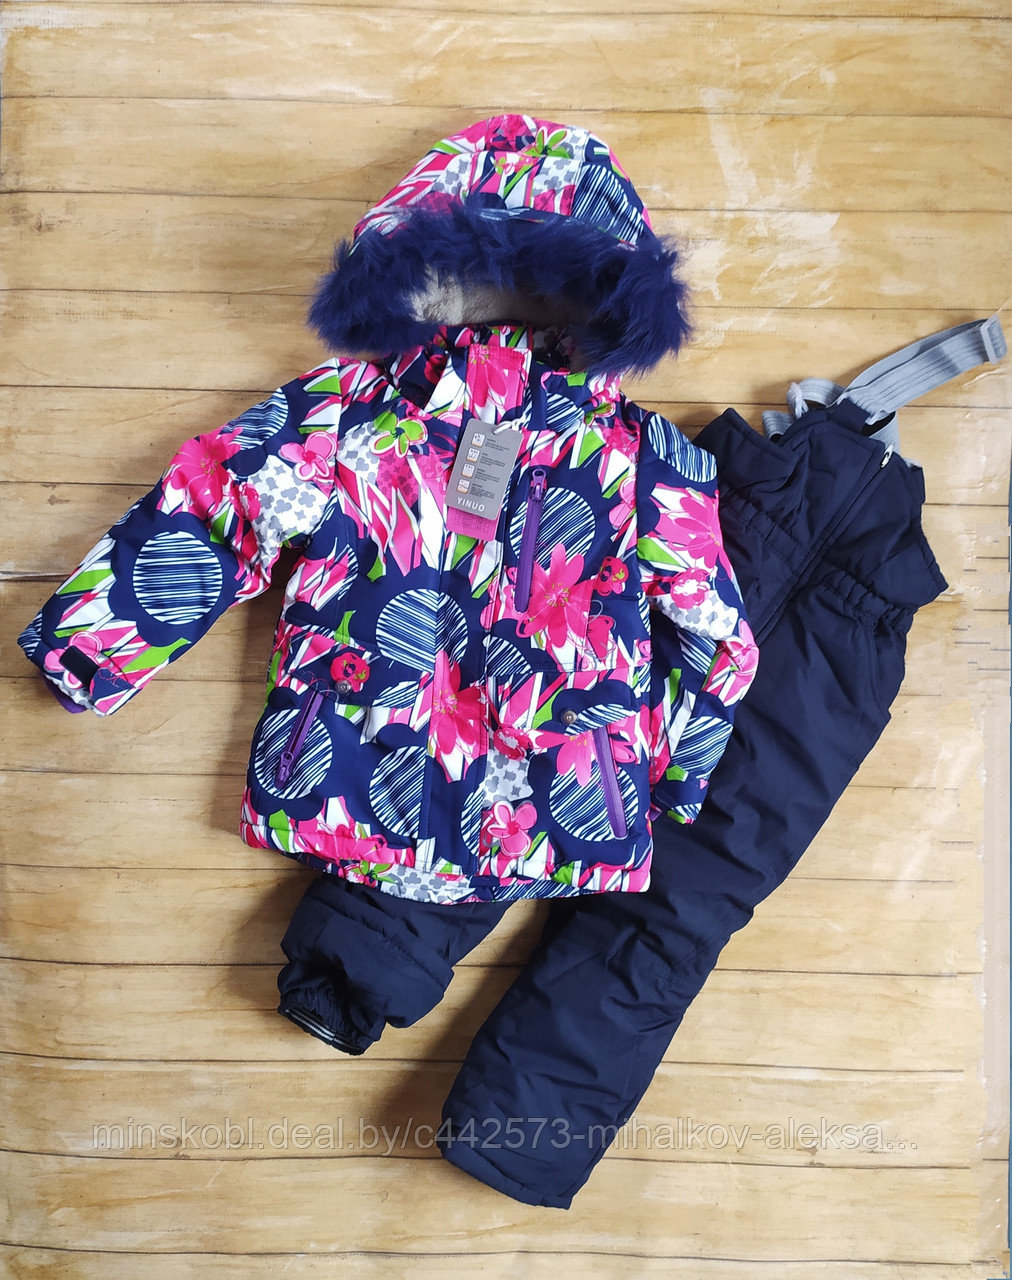 Куртка с полукомбинезоном зимняя девочке, 110